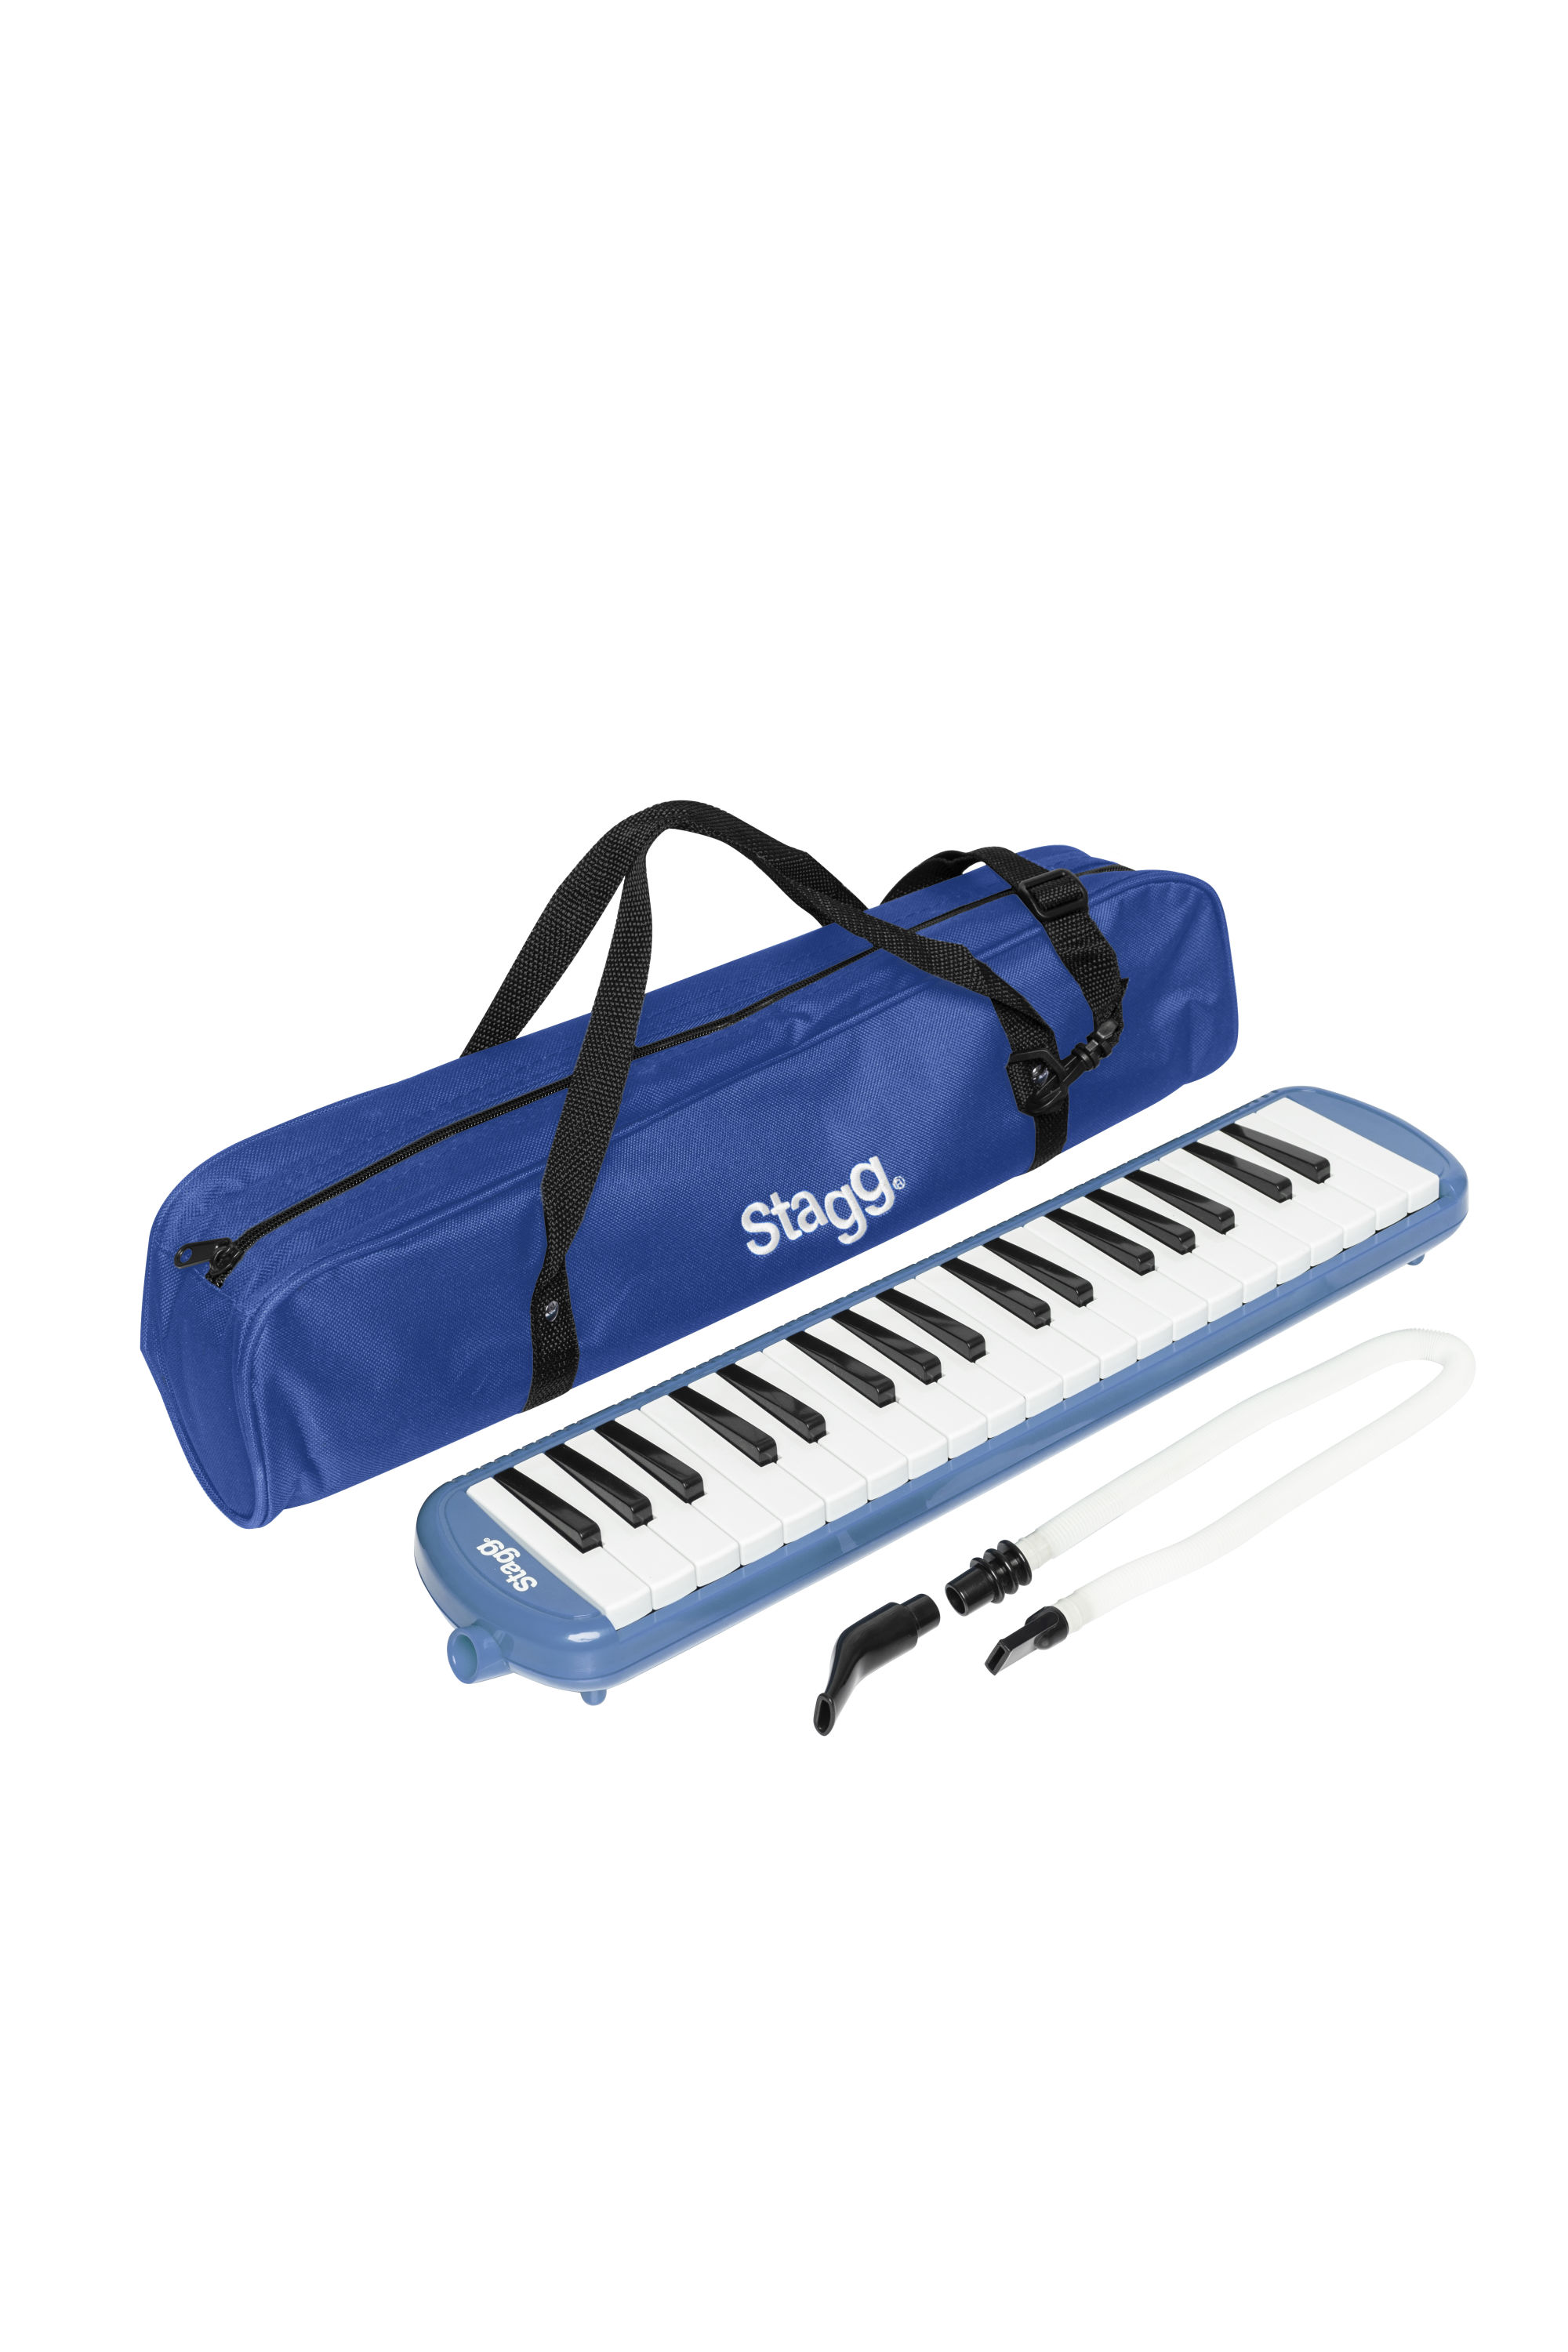 Stagg MELOSTA37 BL, klávesová harmonika, modrá | Obrázok 1 | eplay.sk